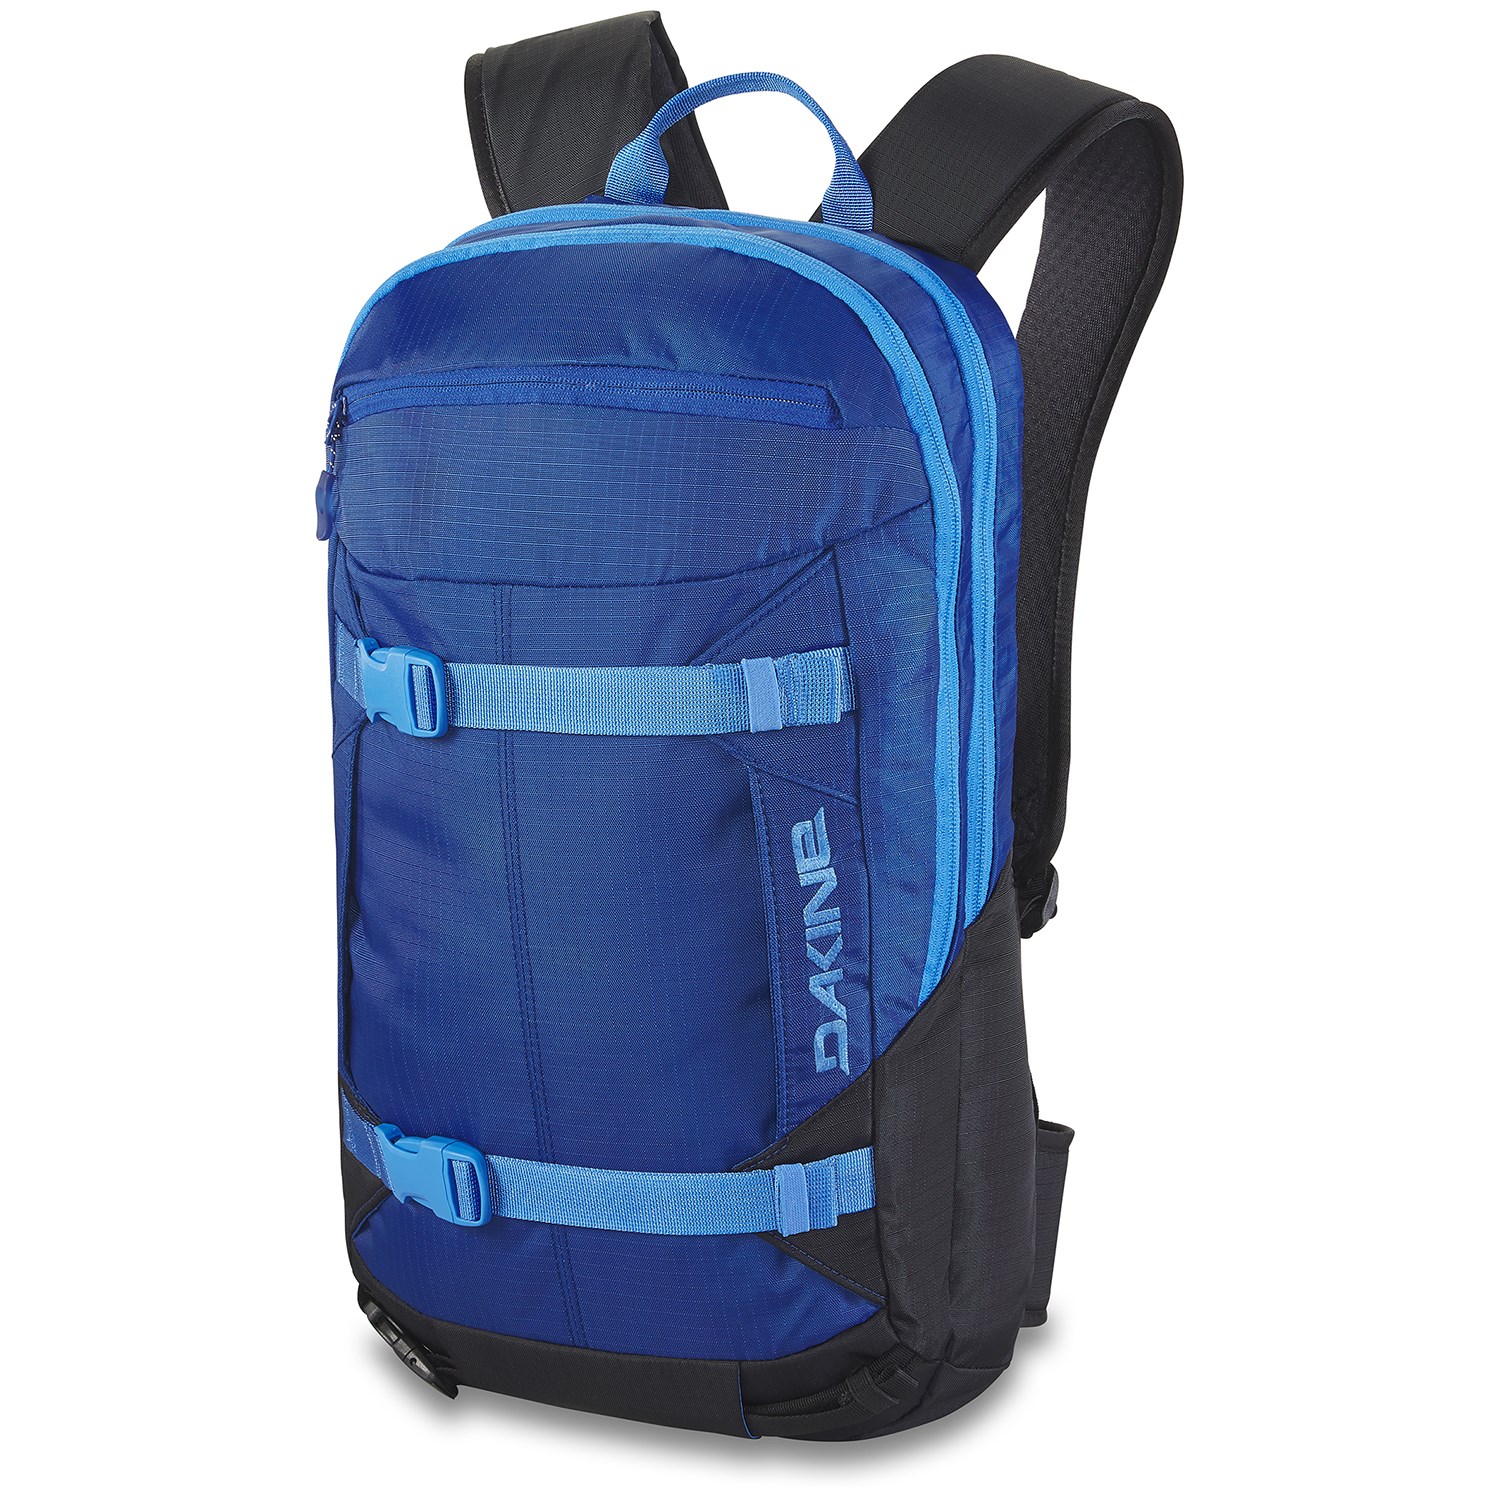 Рюкзак Dakine Mission Pro 18 л, синий рюкзак синий 24 л